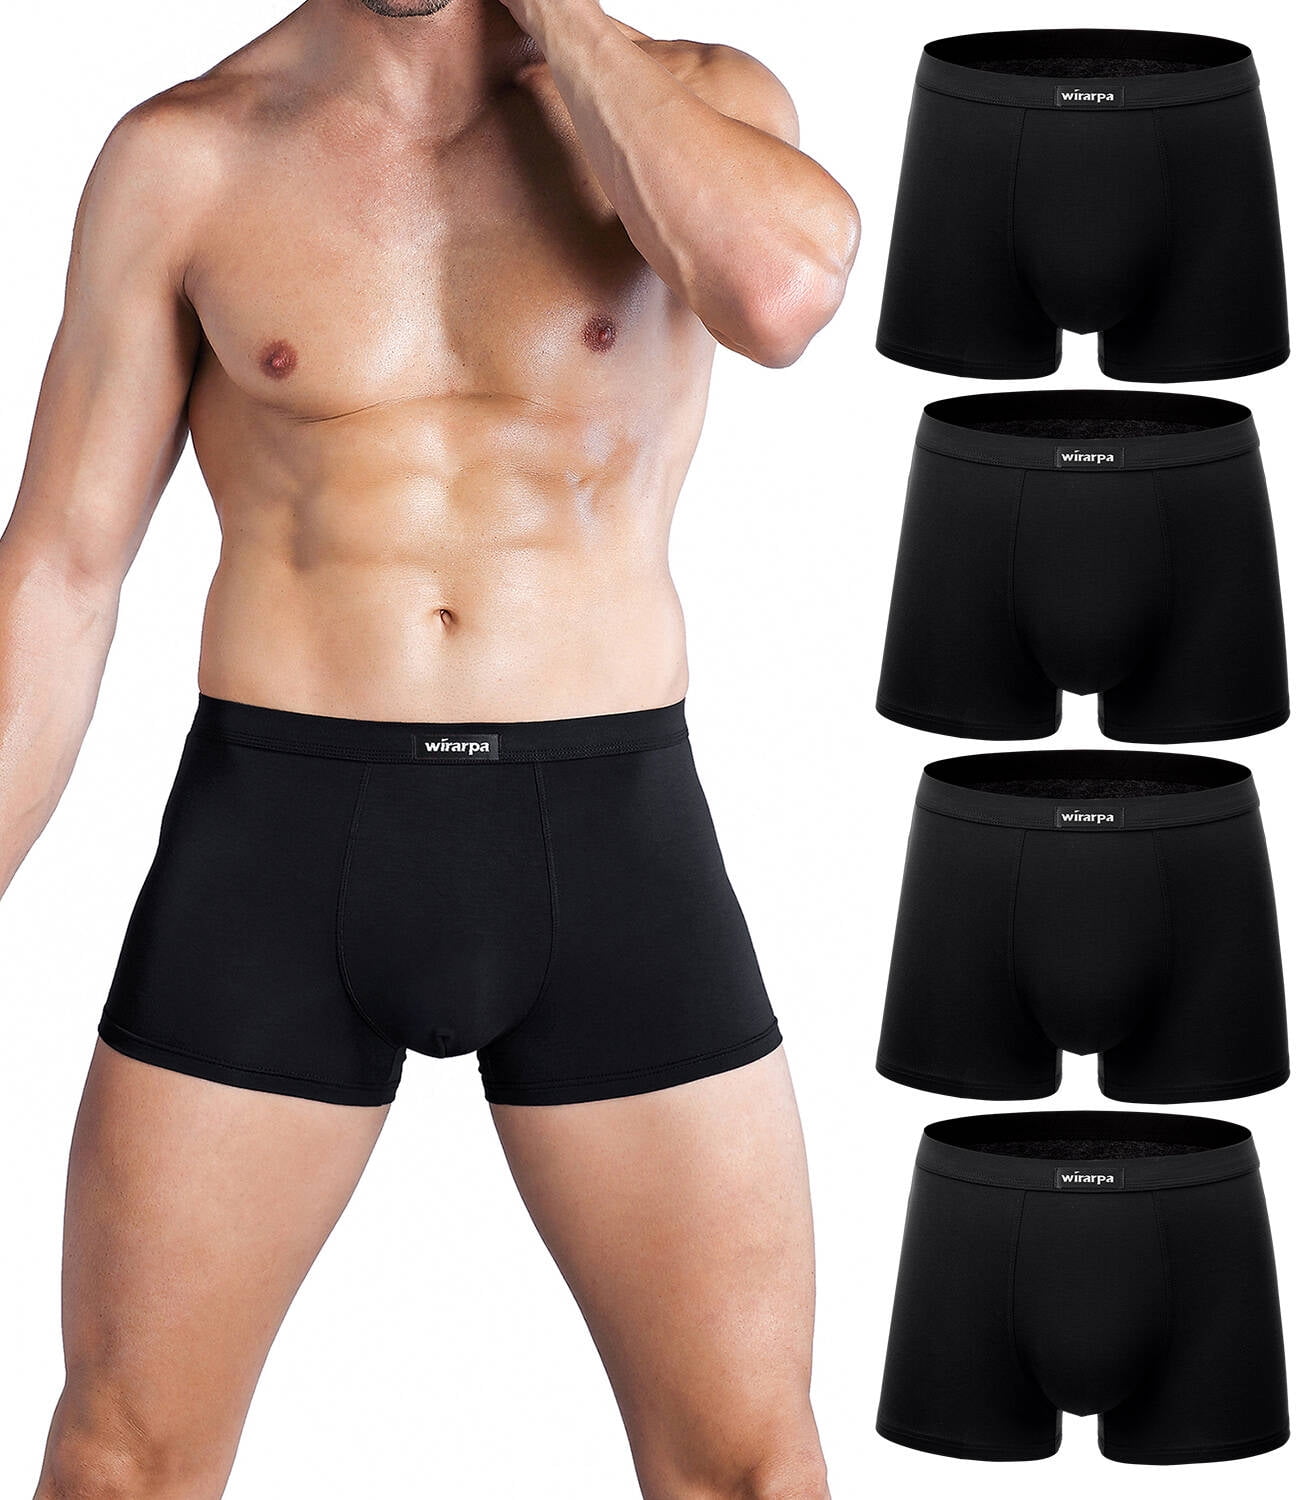 wirarpa Men's Trunk Underwear Short Leg Boxer Briefs Black 4 Pack